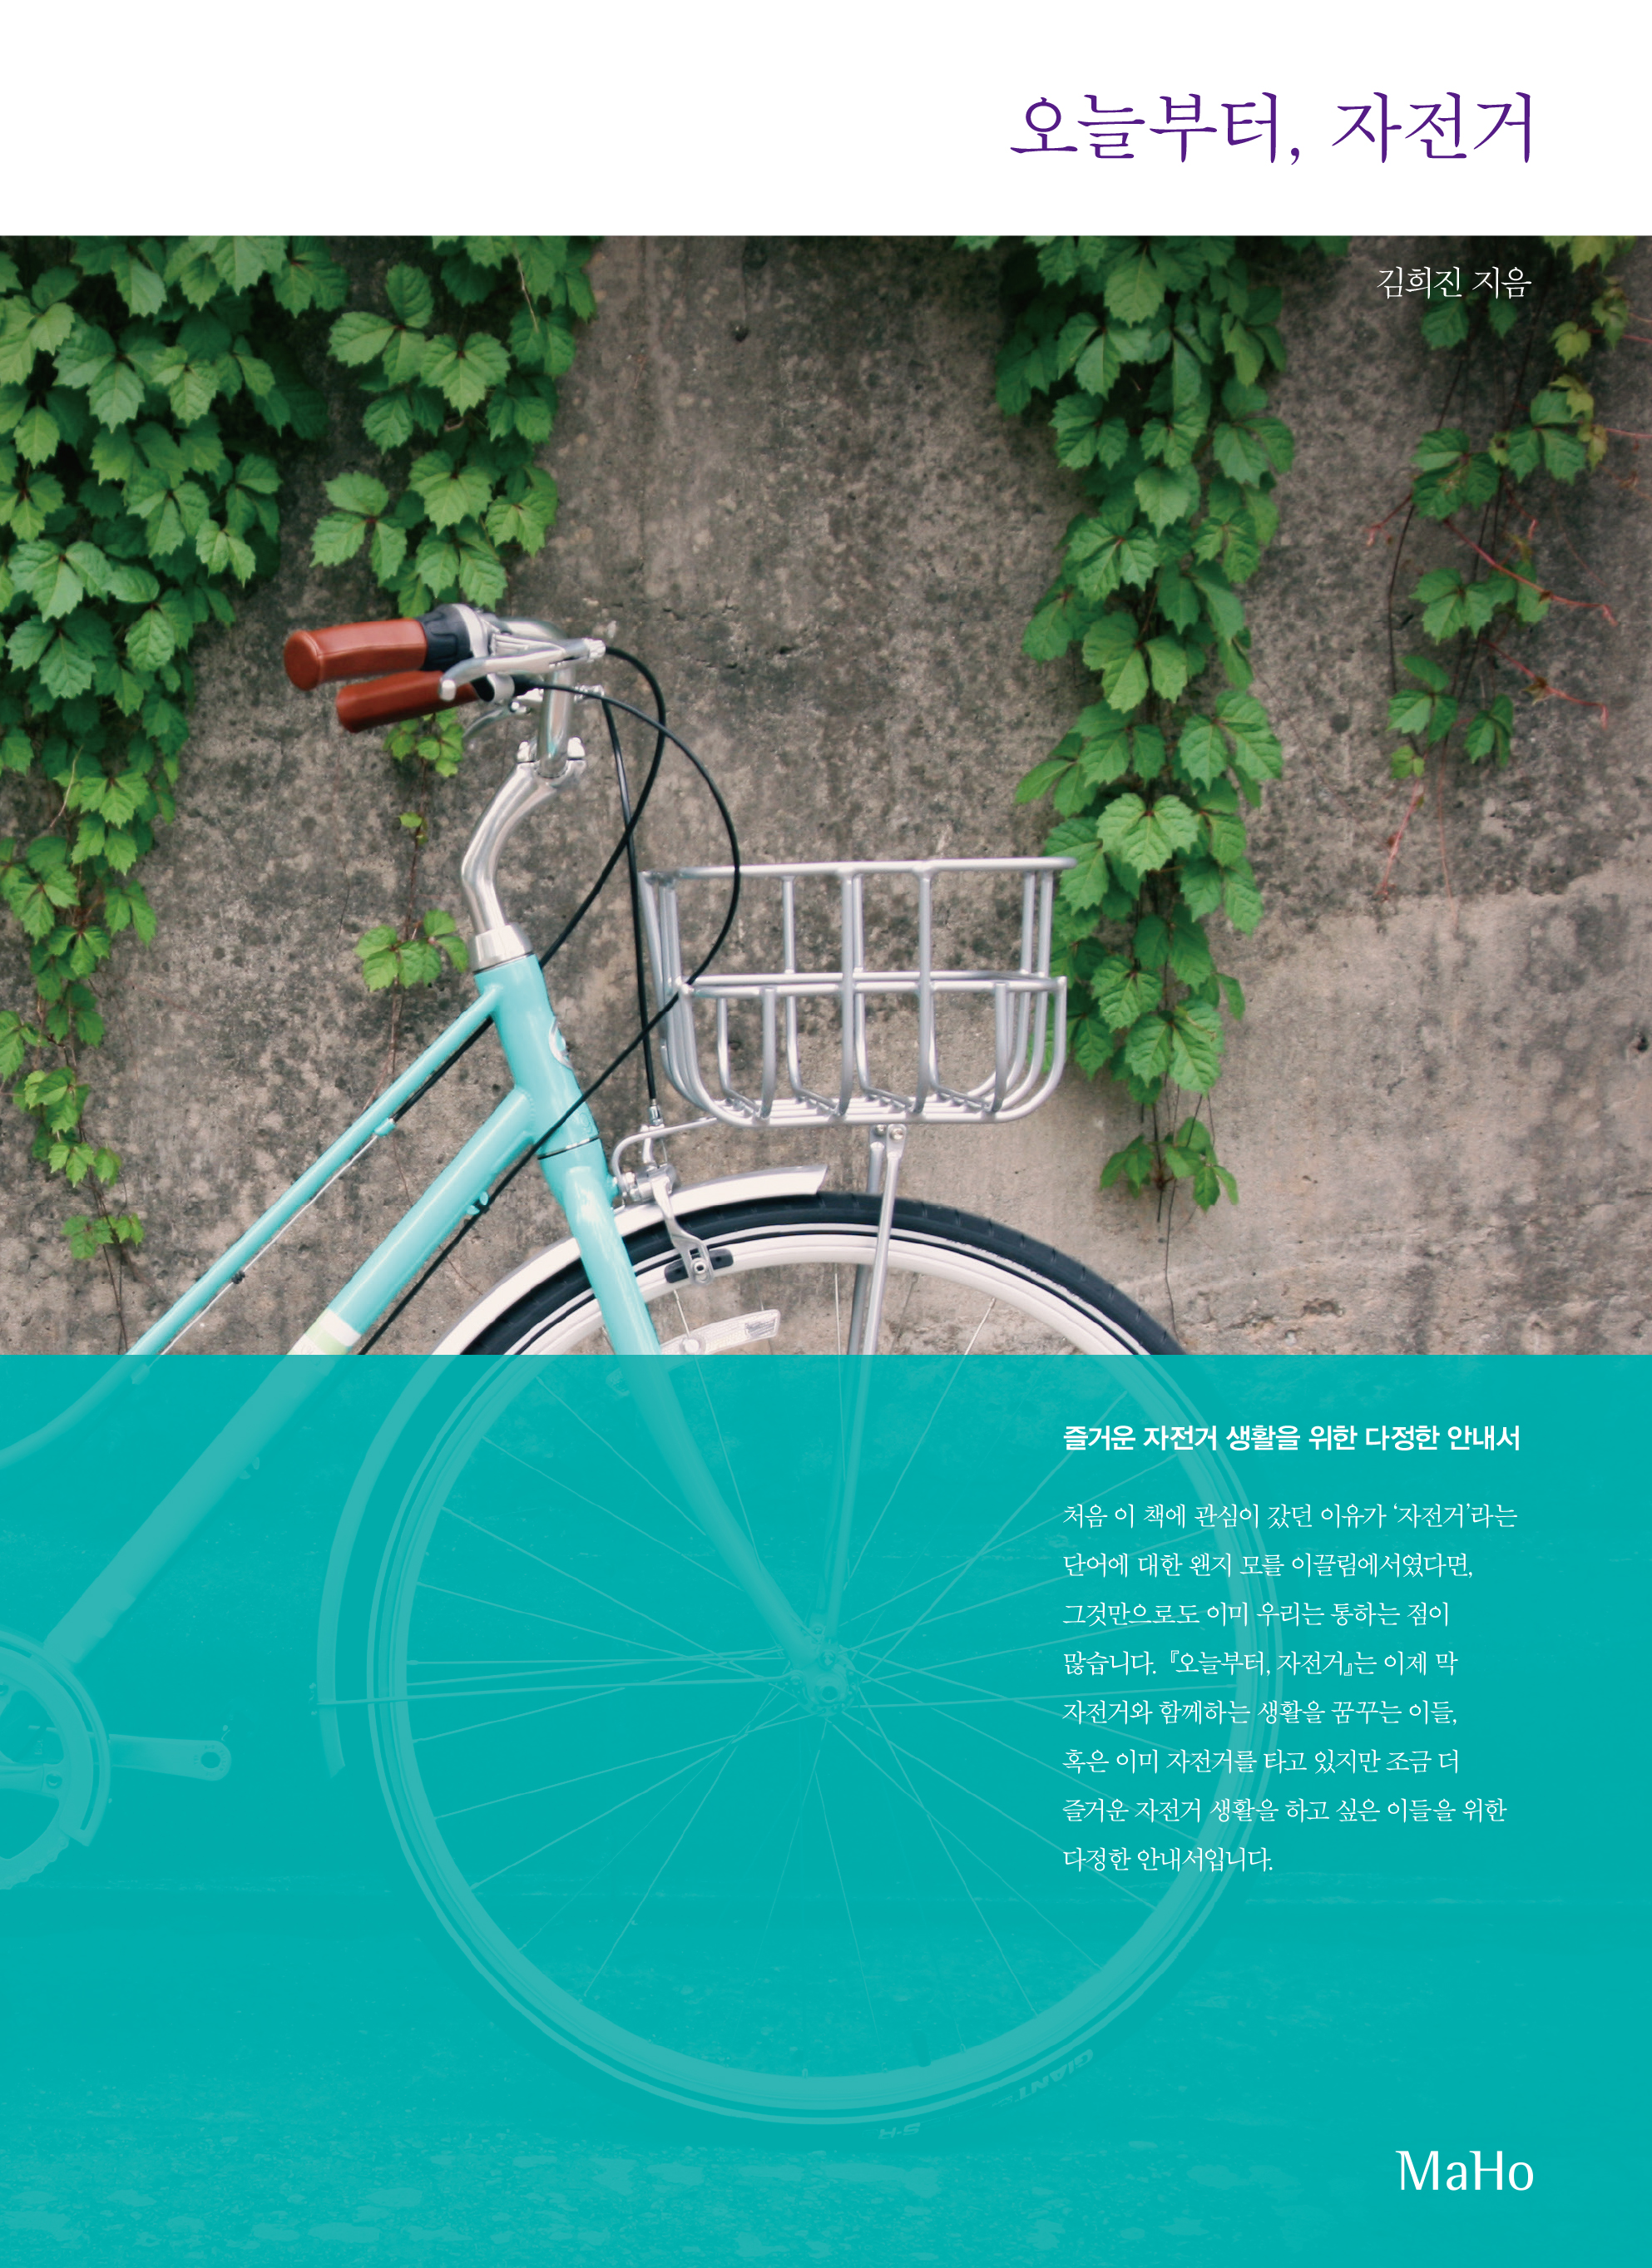 오늘부터 자전거 표지(띠지).jpg